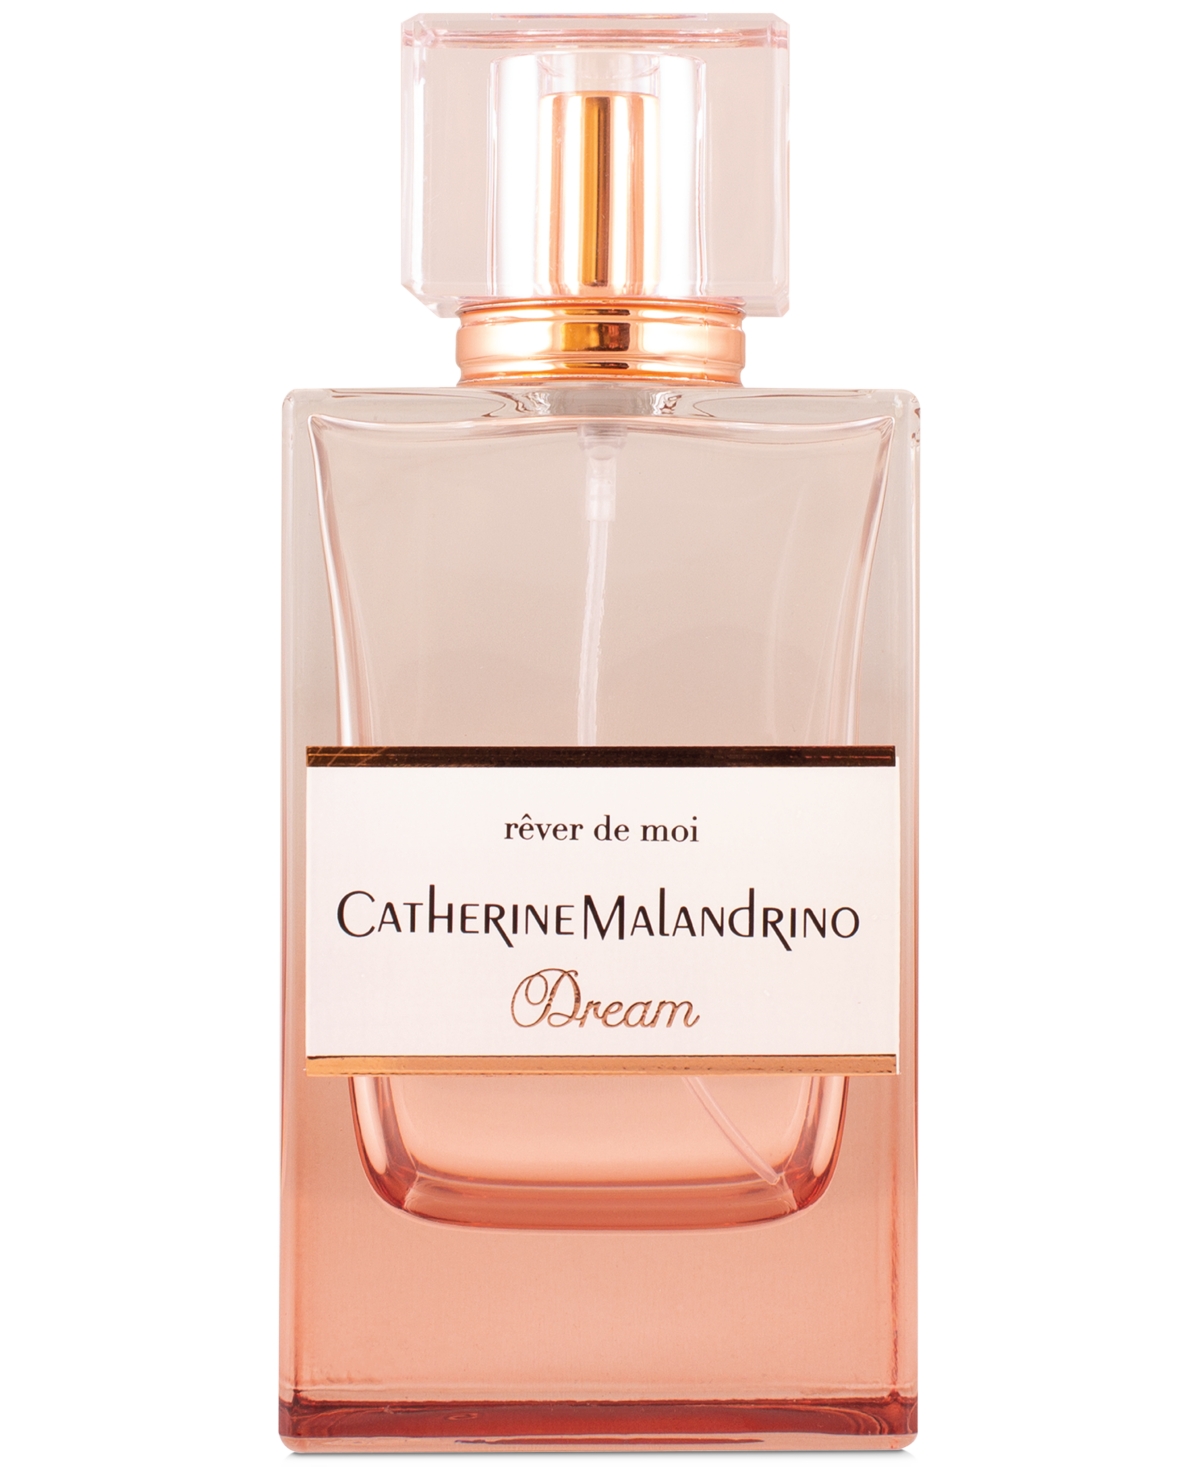 Catherine Malandrino Rever de Moi Dream Eau de Parfum Spray, 3.4-oz.